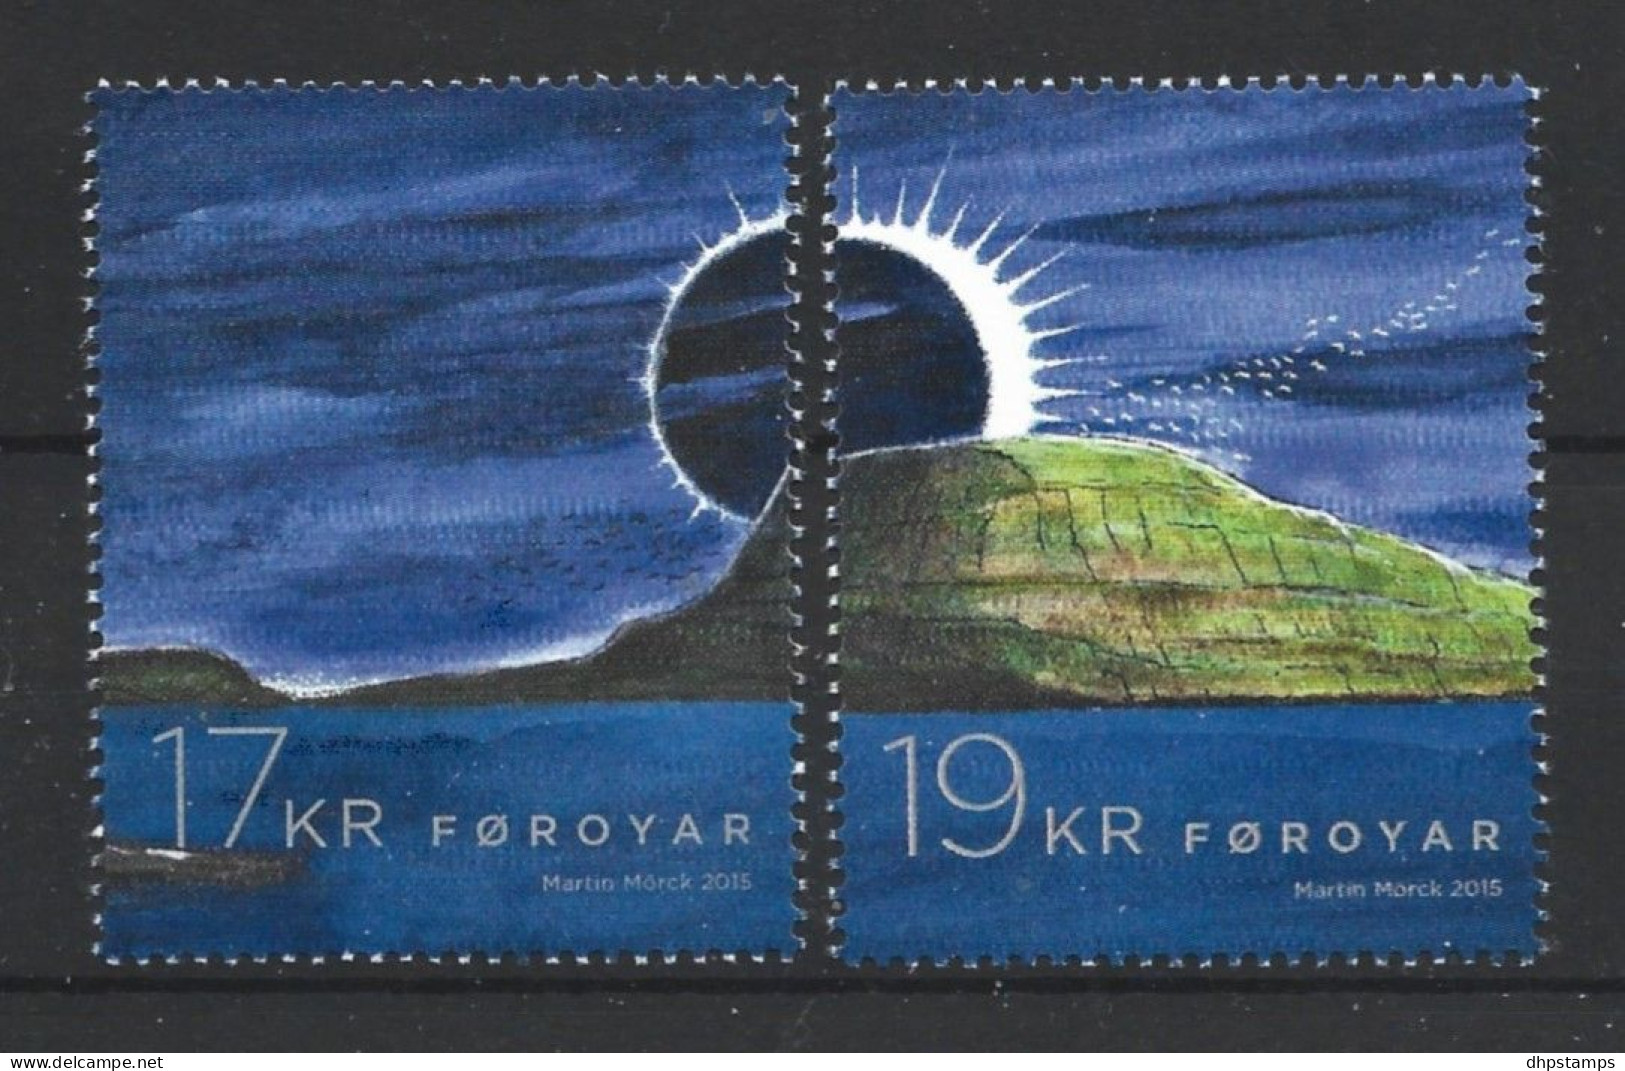 Faroer 2015 Total Solar Eclips  Y.T. 828/829 ** - Islas Faeroes